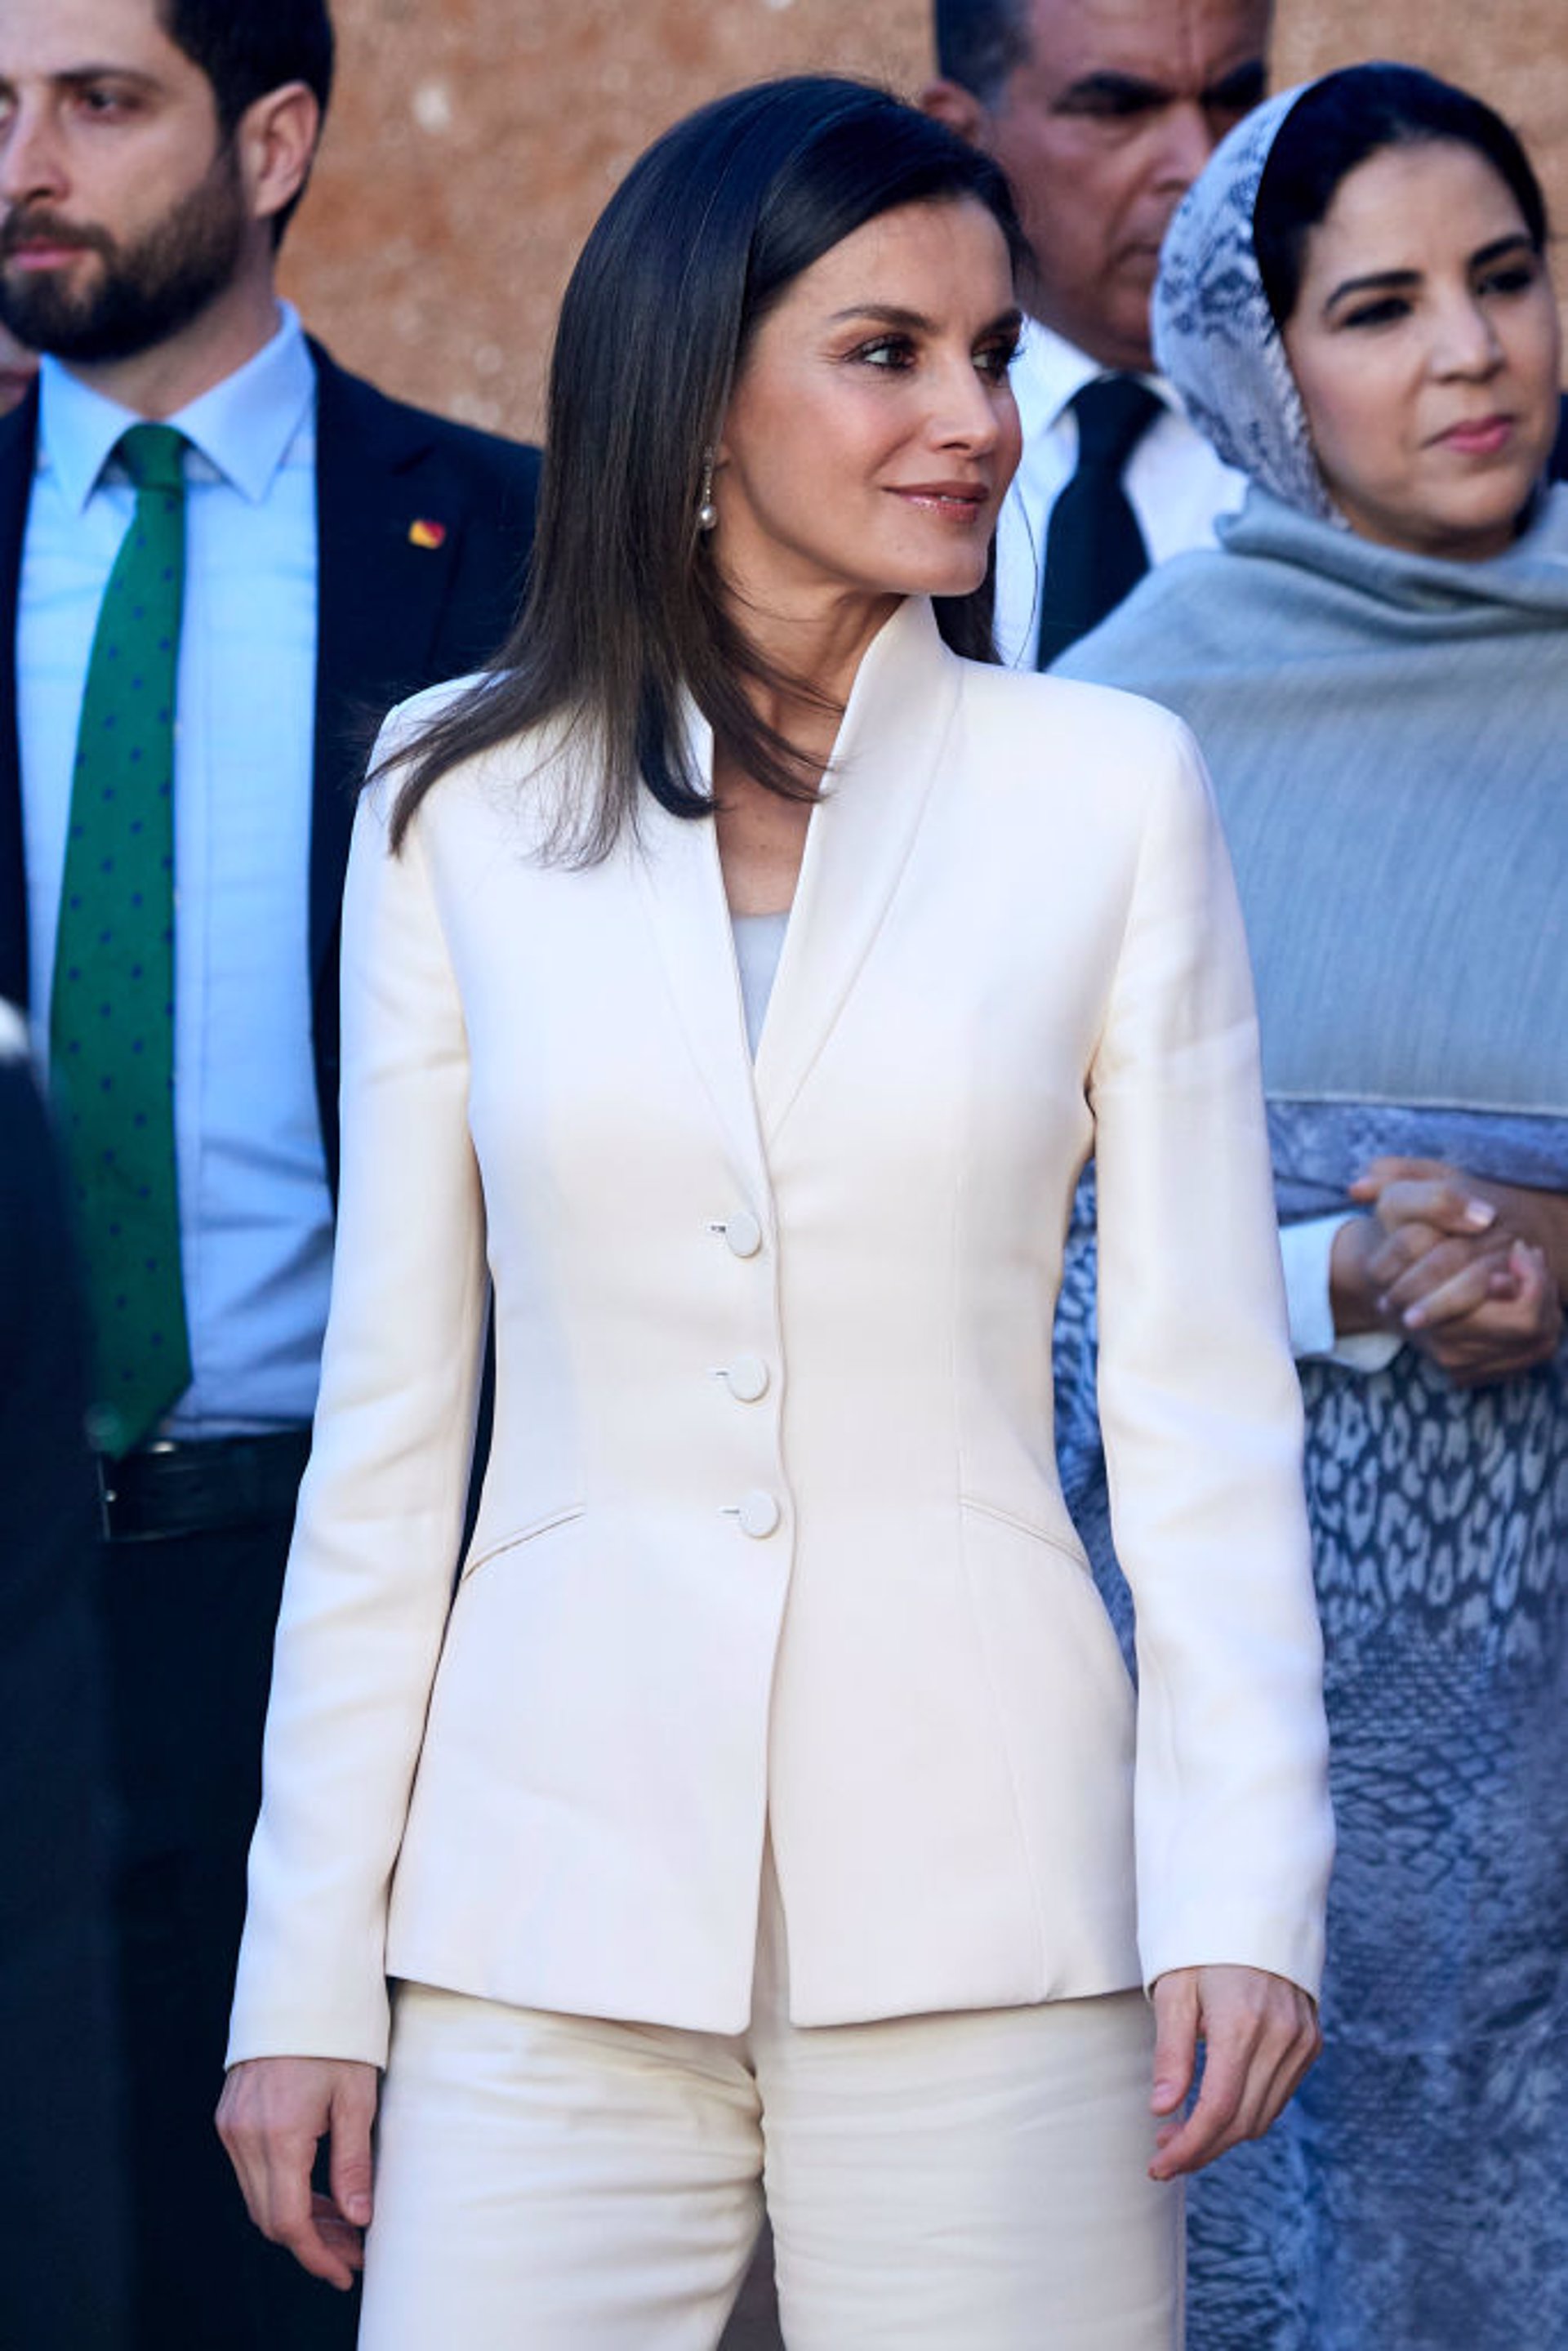 La Reina Letizia ha lucido en Marruecos el traje de pedida de compromiso de Armani pero en esta ocasión con camiseta para evitar un mayor escote al ir al mausoleo marroquí